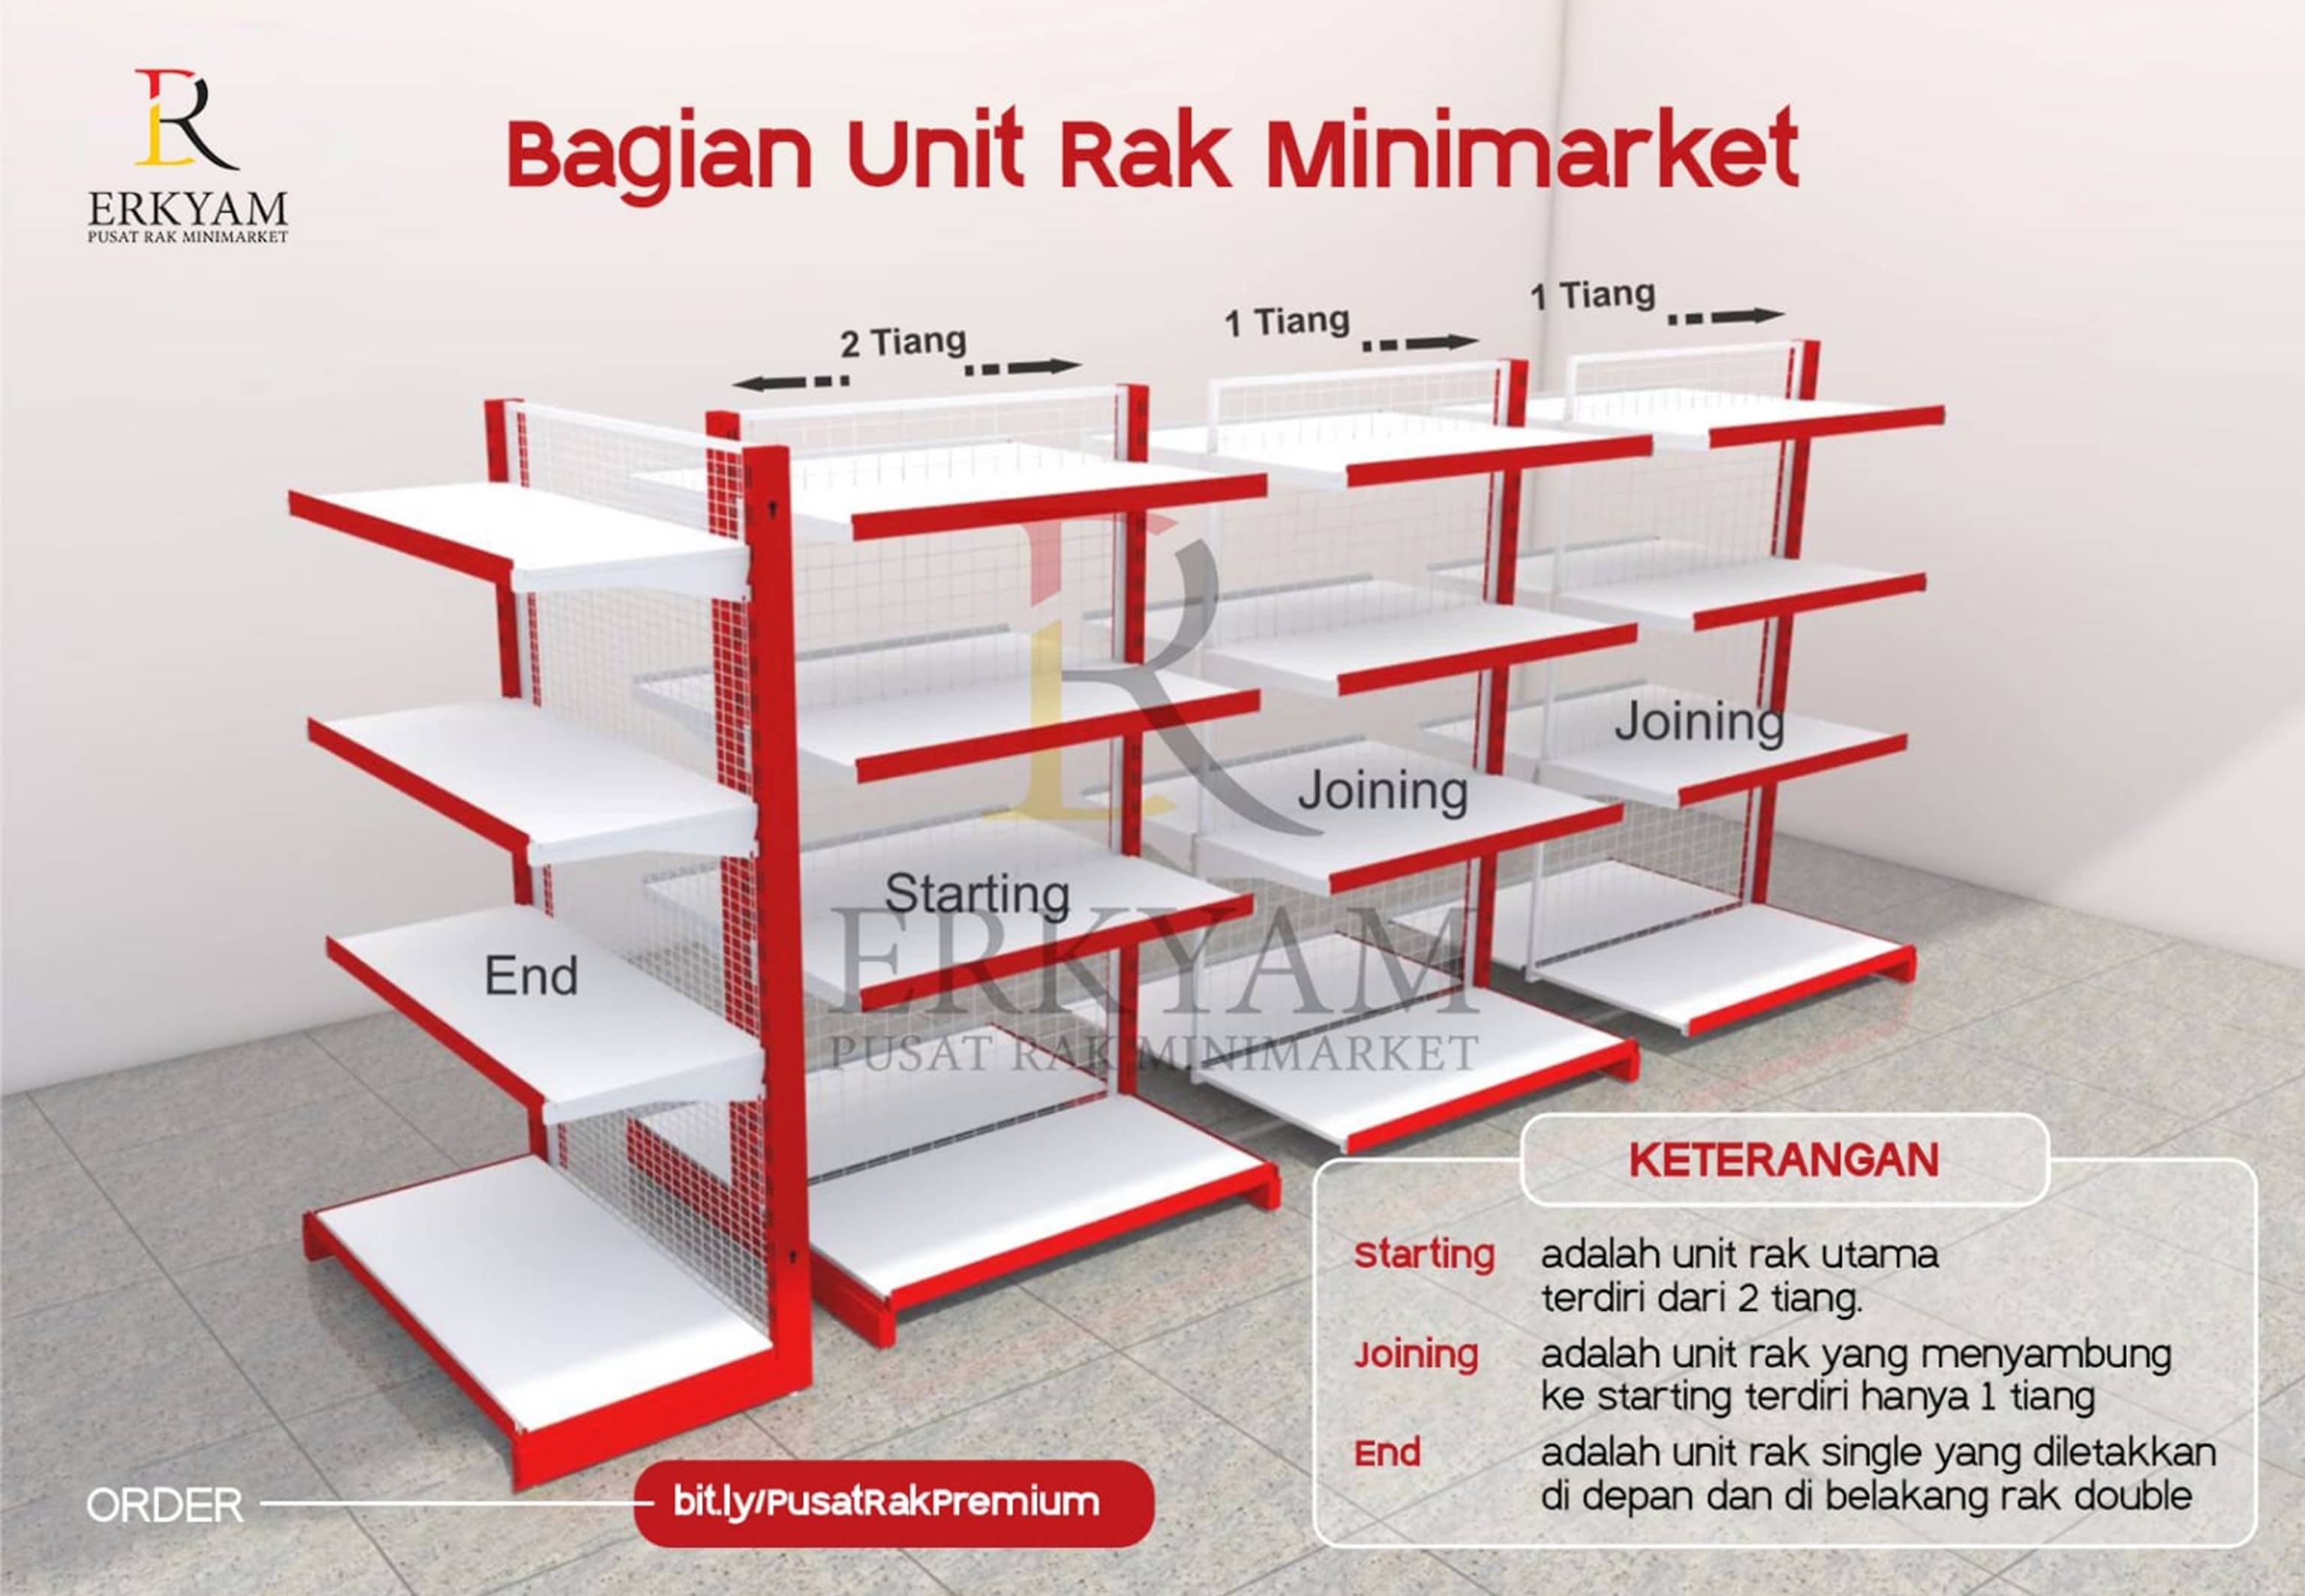 ERKYAM Distributor Rak Minimarket wilayah Lebak Banten